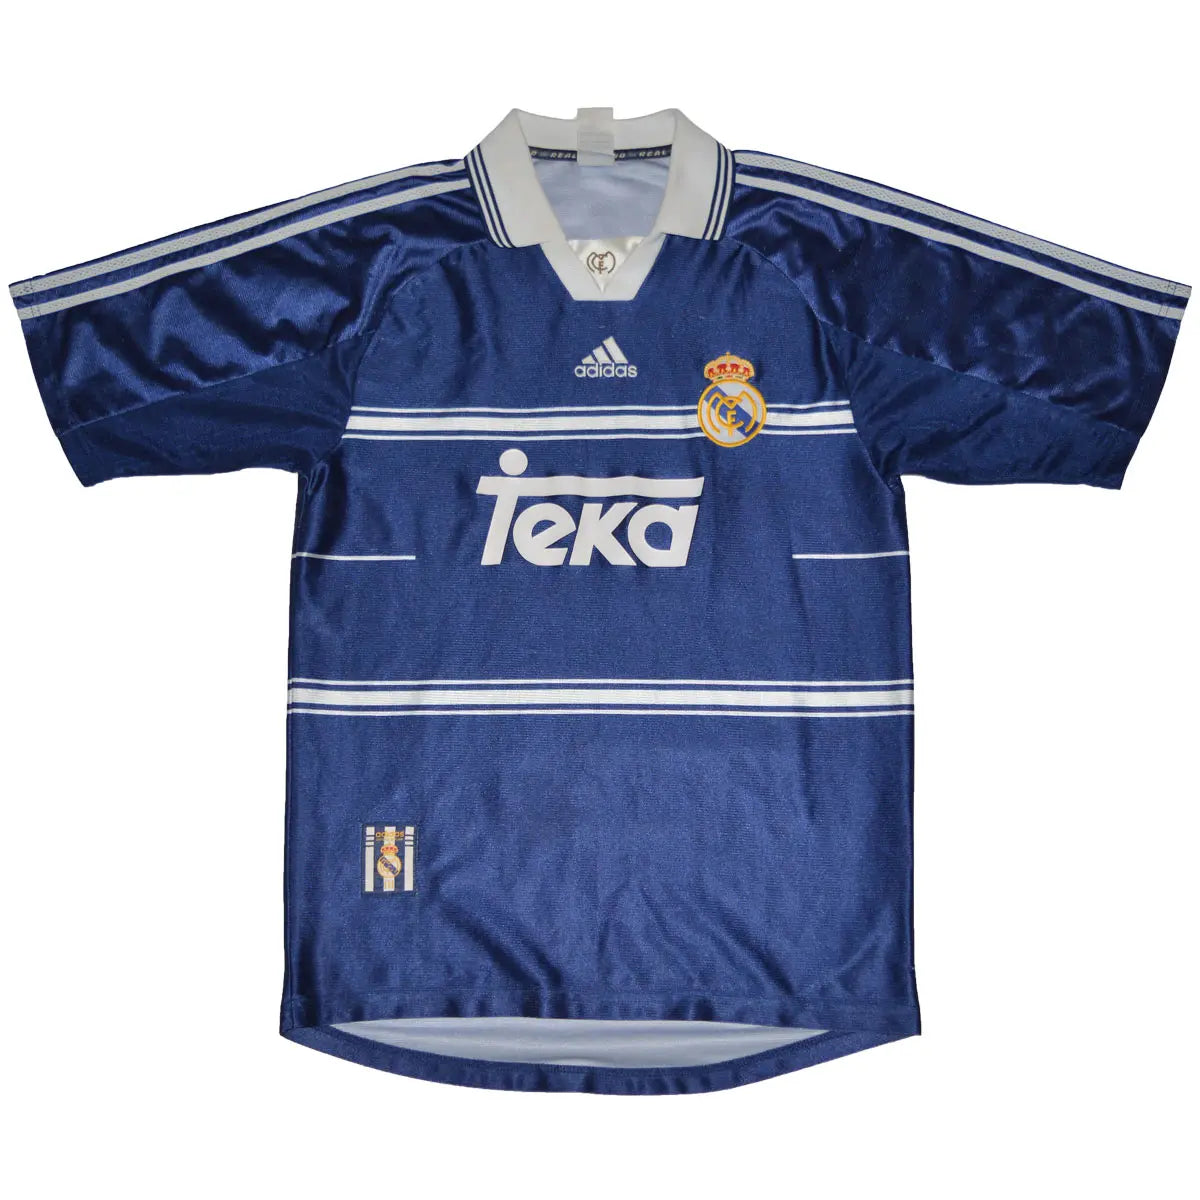 Maillot de foot rétro/vintage authentique bleu et blanc adidas Real Madrid extérieur 1998-1999